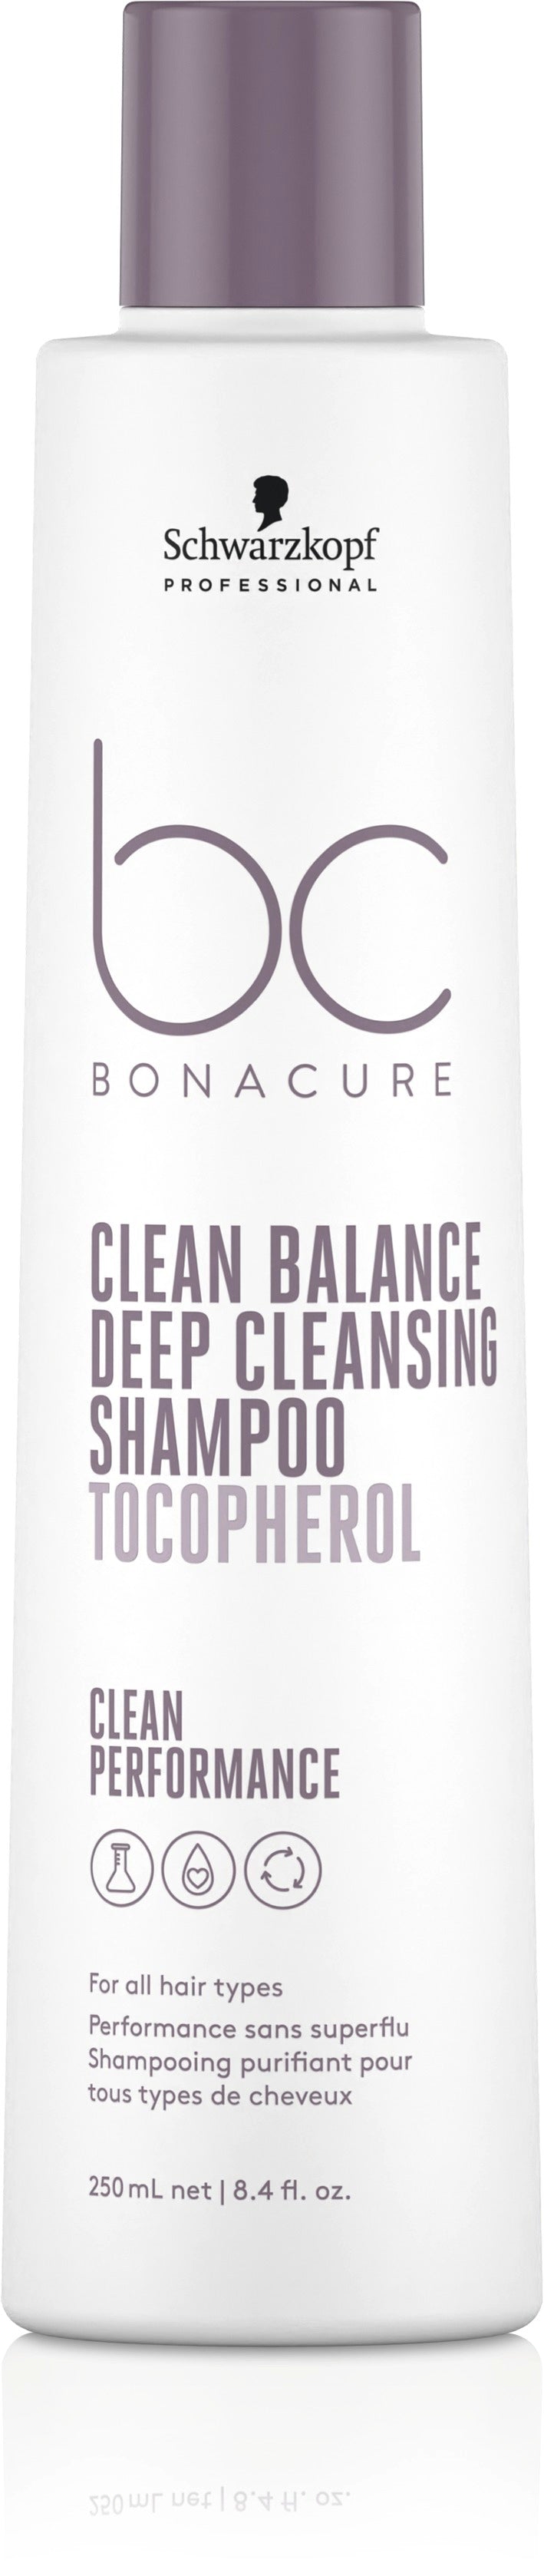 Bc Deep Cleansing Shampoo 250Ml